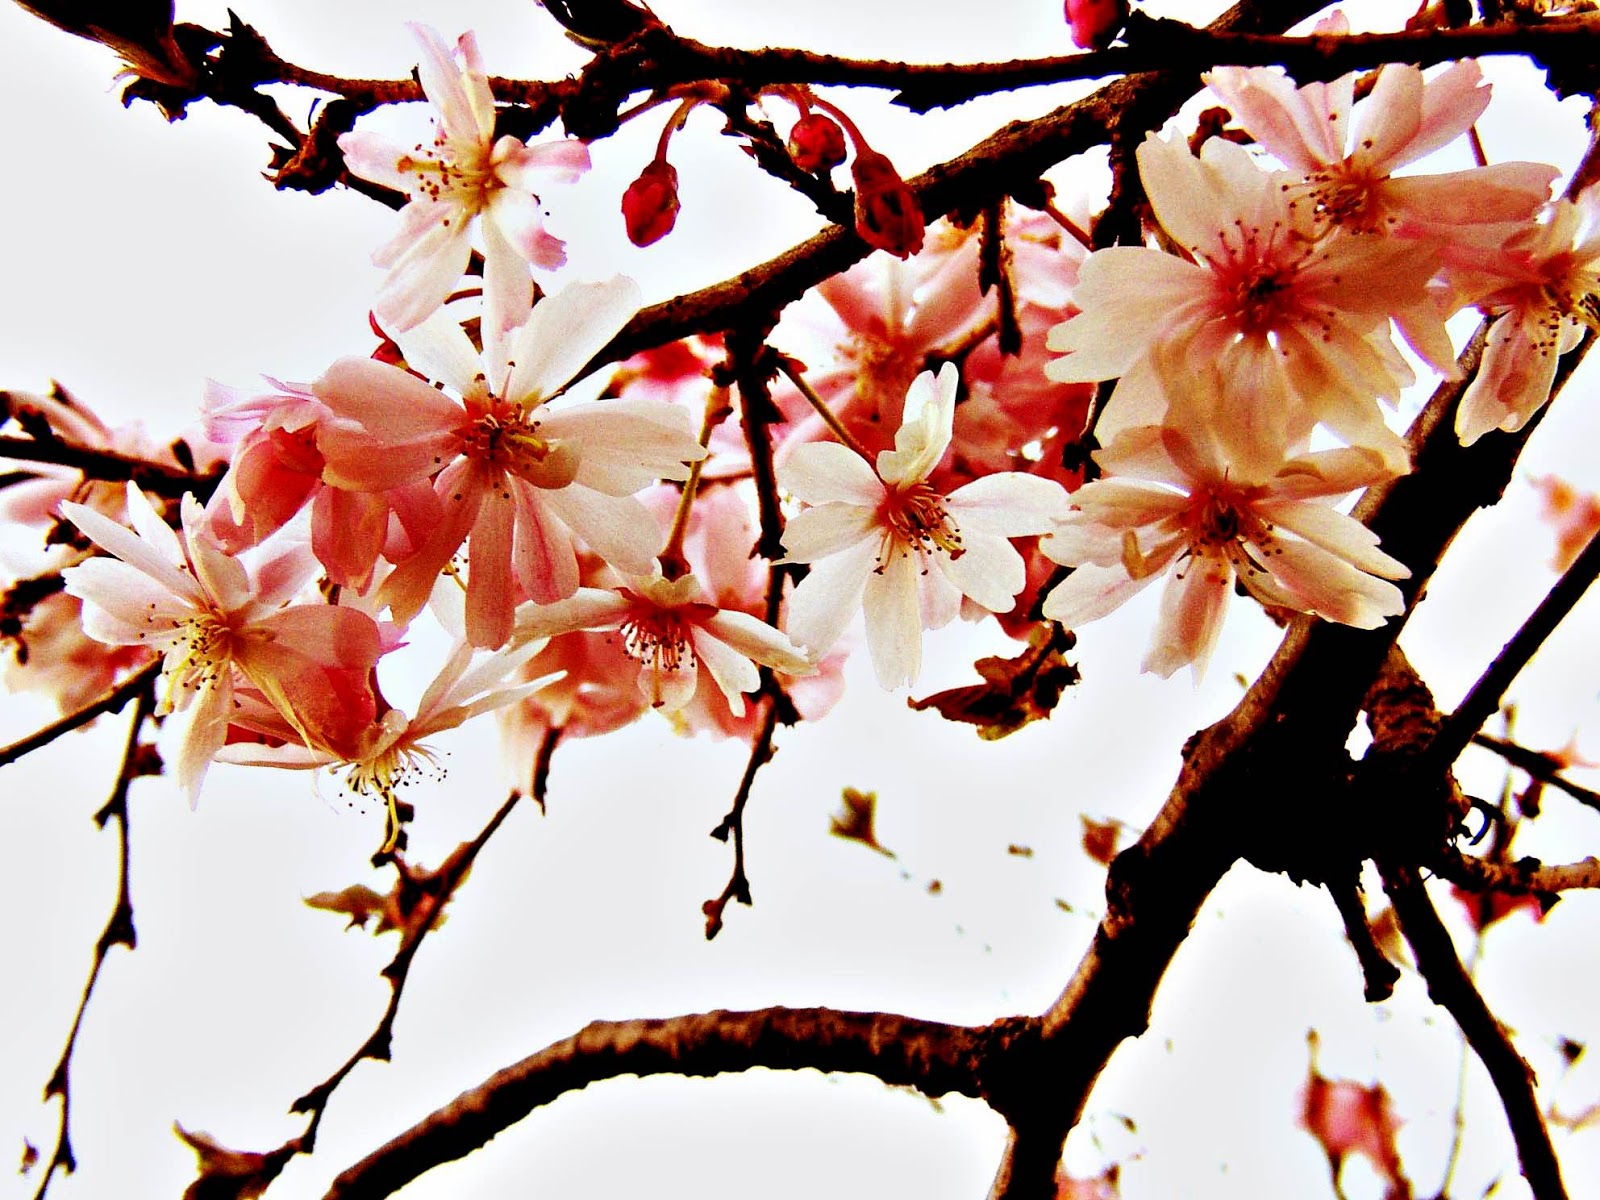 Kata Romantis Wallpaper Bunga Sakura Jepang Cantik ...